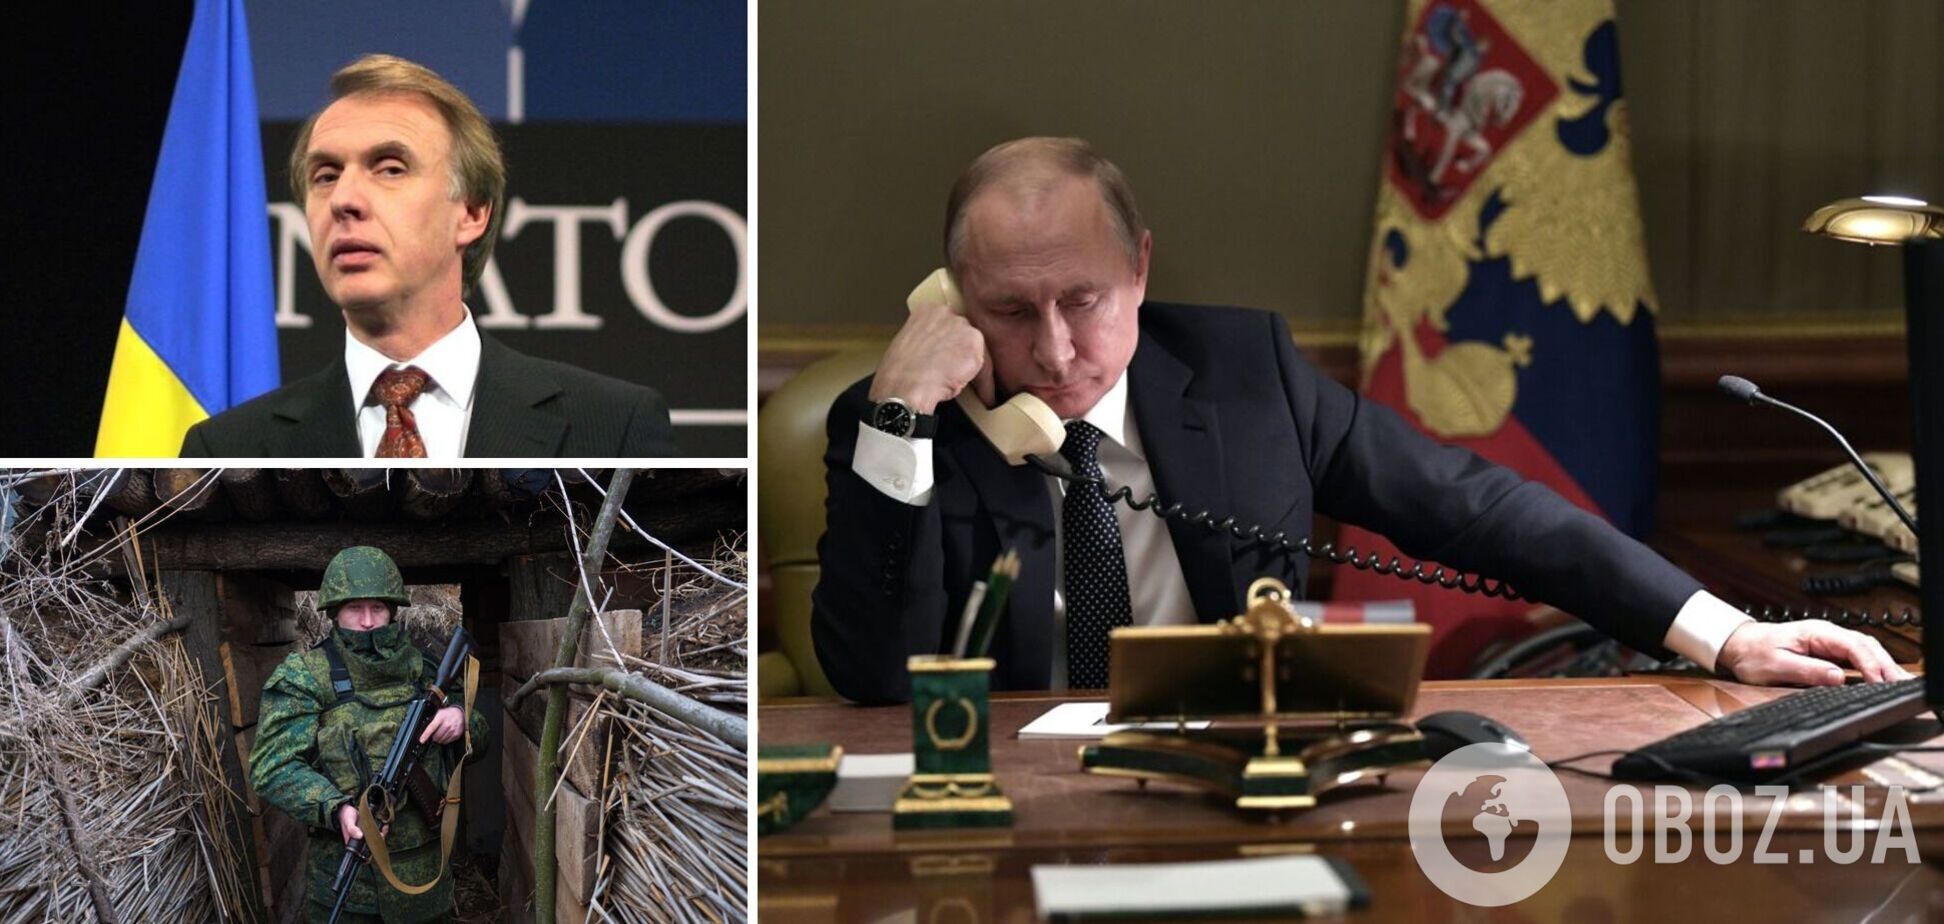 Огризко: Путін припинить криваву війну, коли припиниться імітація боротьби за мир. Інтерв’ю